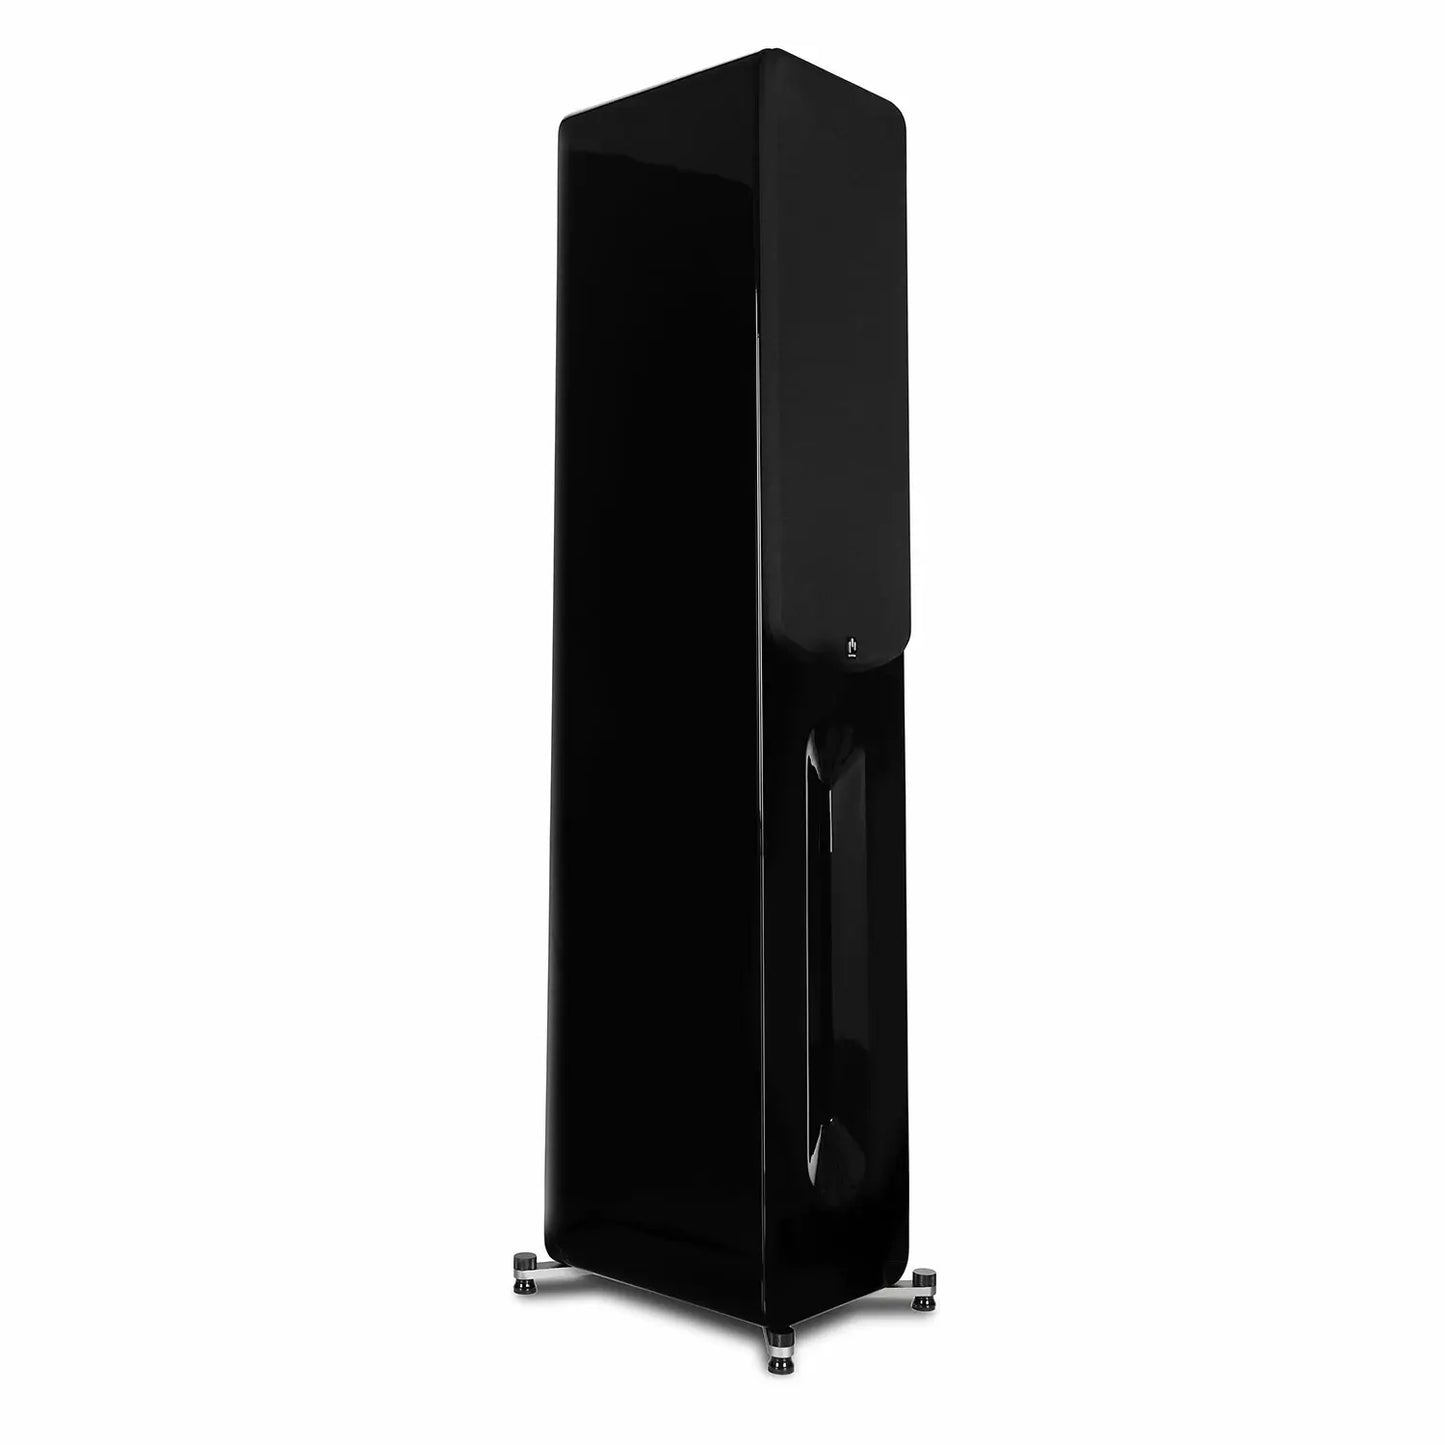 Aperion-Novus-N6T-Dual-6.5"-2-Way-Floorstanding-Tower-Speaker-GlossBlack-Frontside-aperionaudio